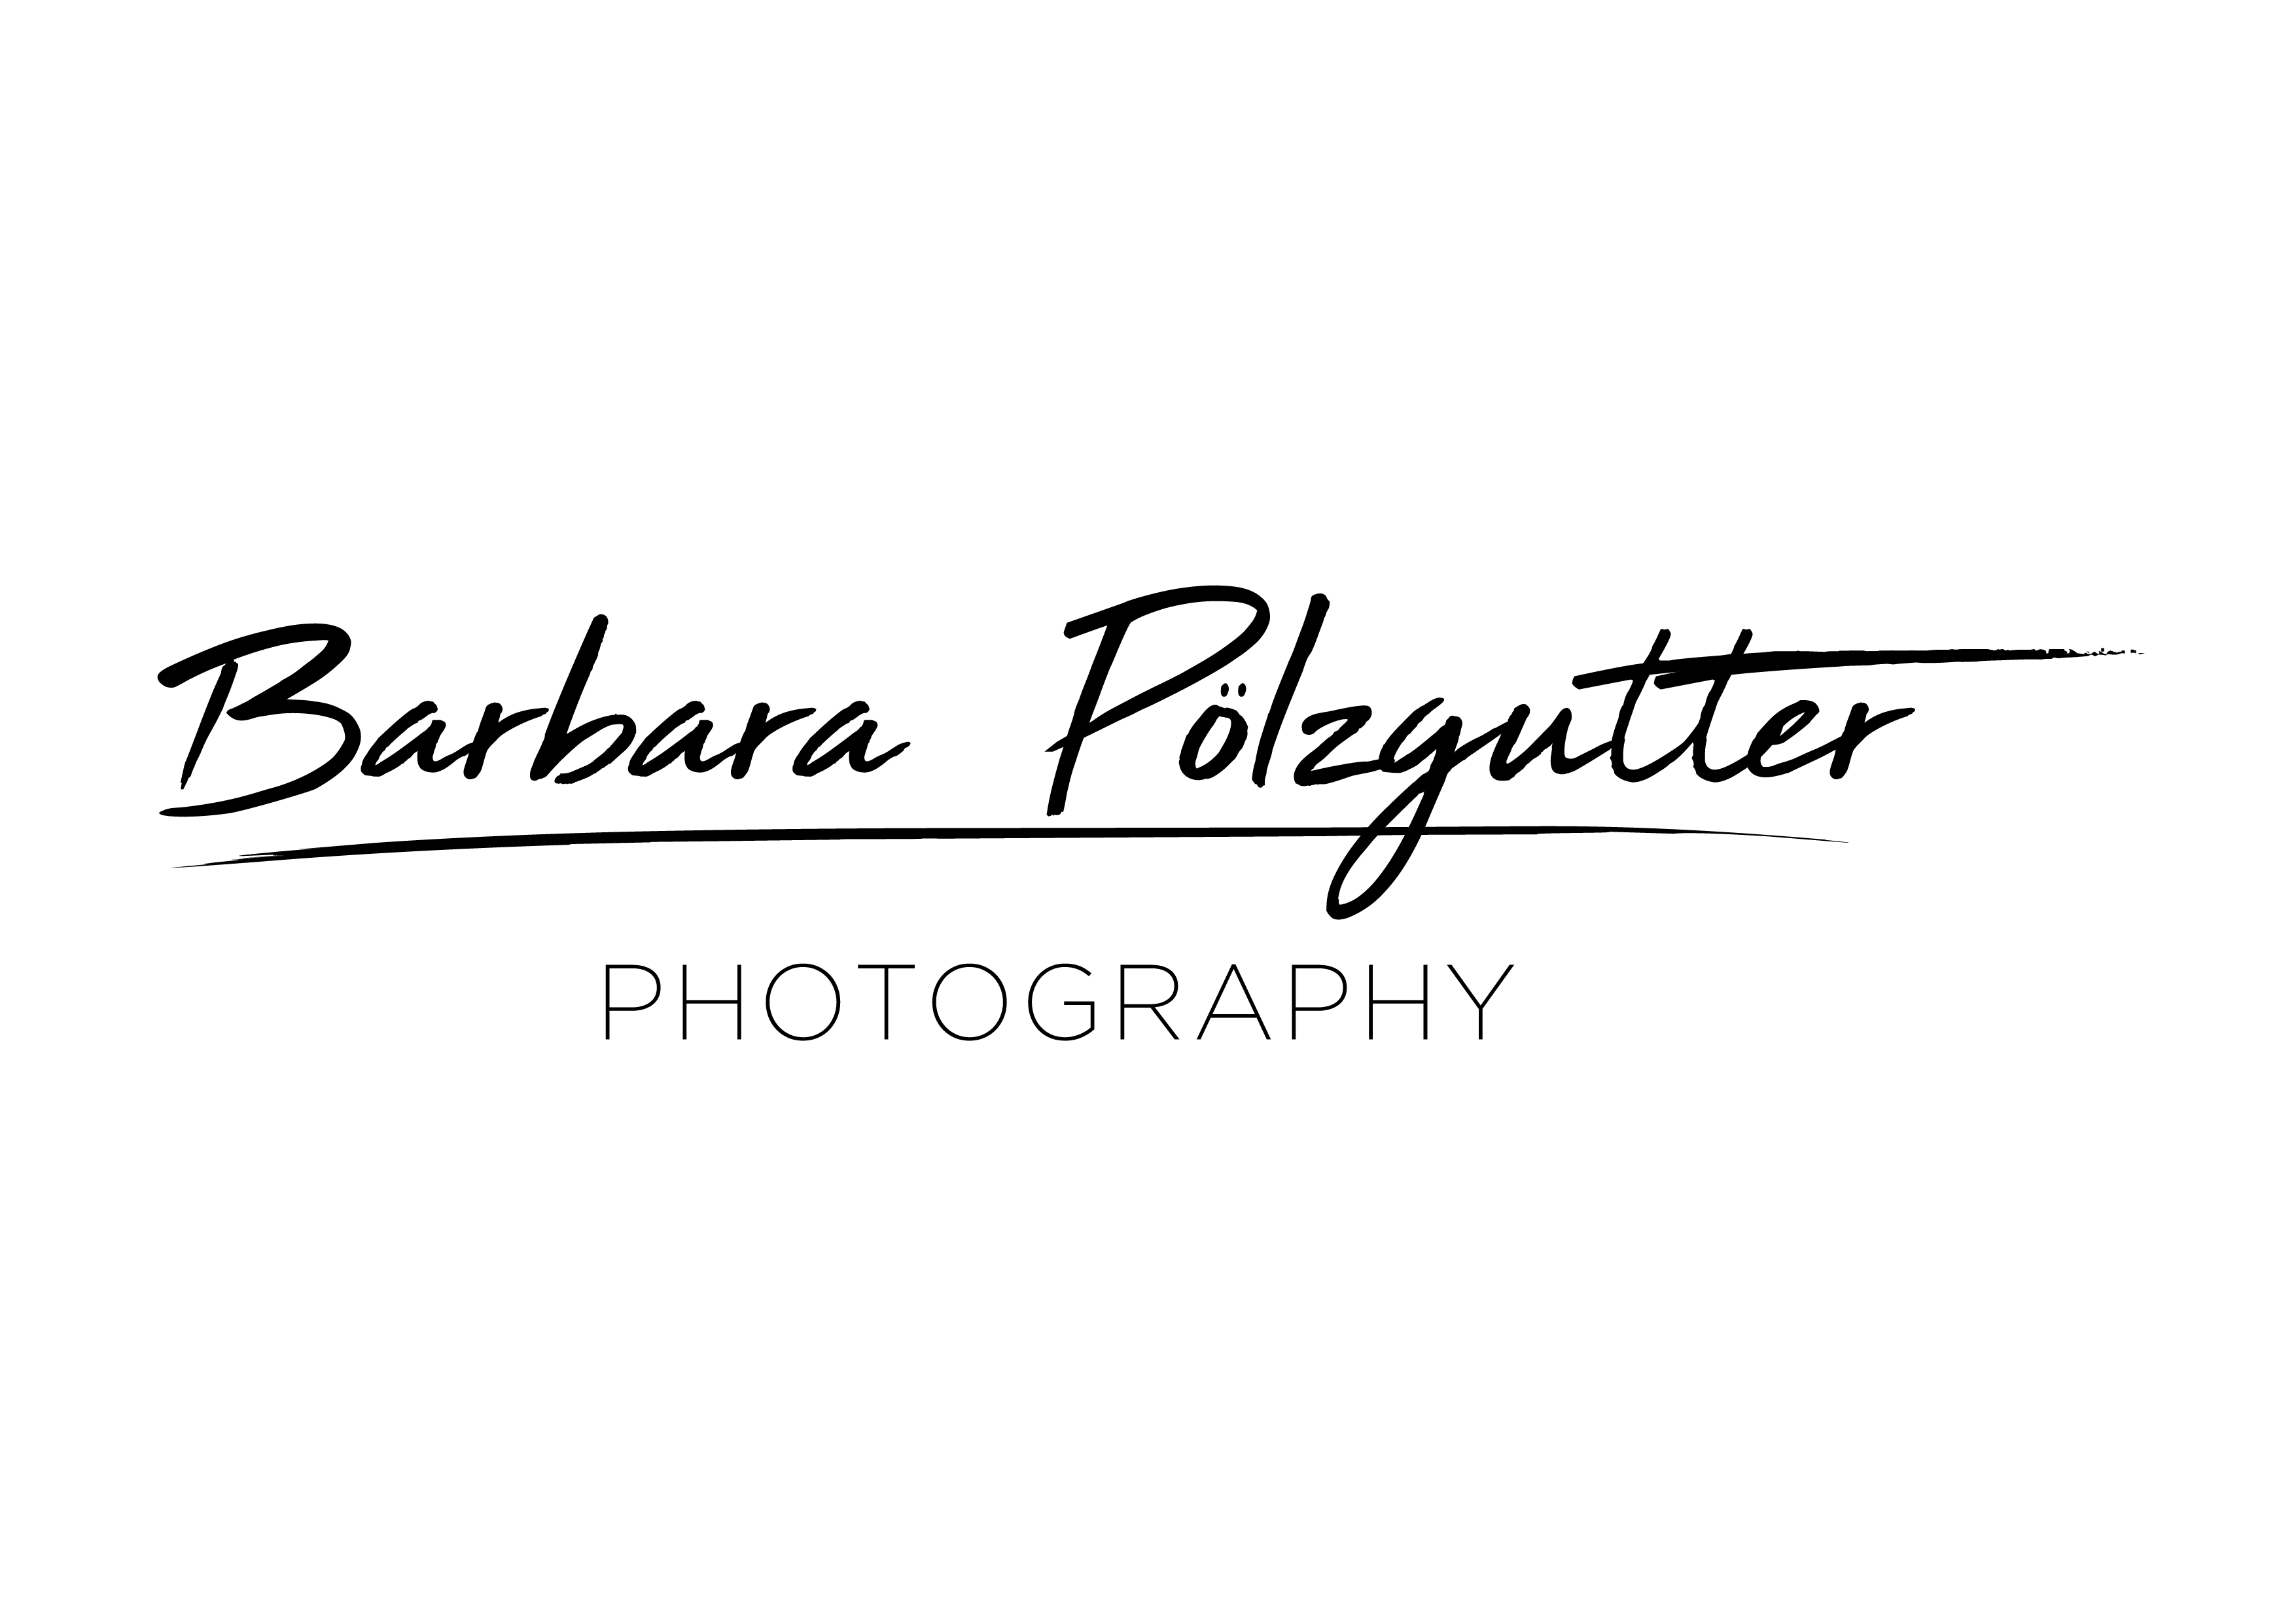 Barbara_Pölzgutter_Logo_Vektor-01